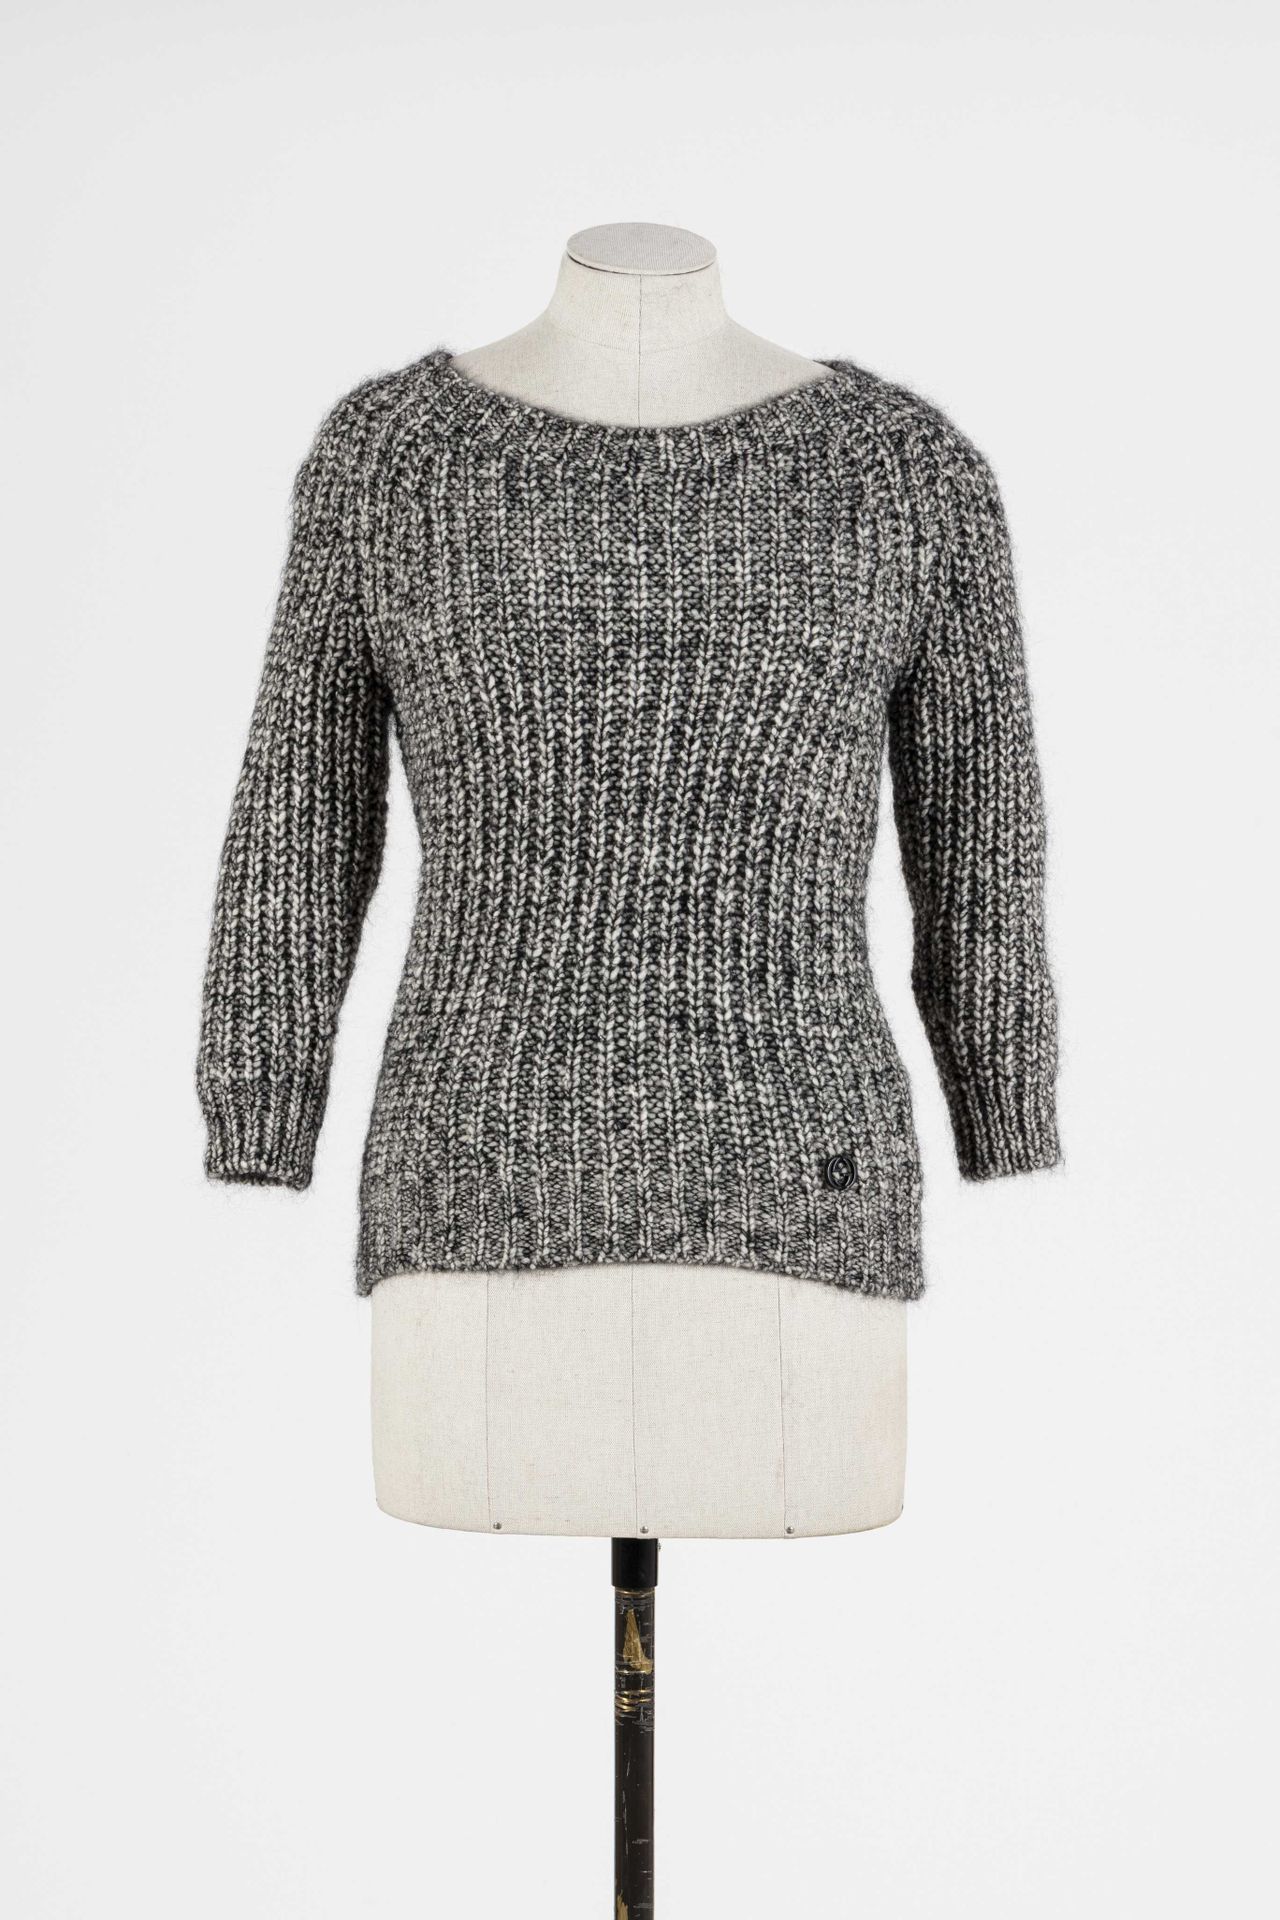 Null GUCCI: Pullover aus grau melierter Wolle, Rundhalsausschnitt, 3/4-Ärmel. 

&hellip;